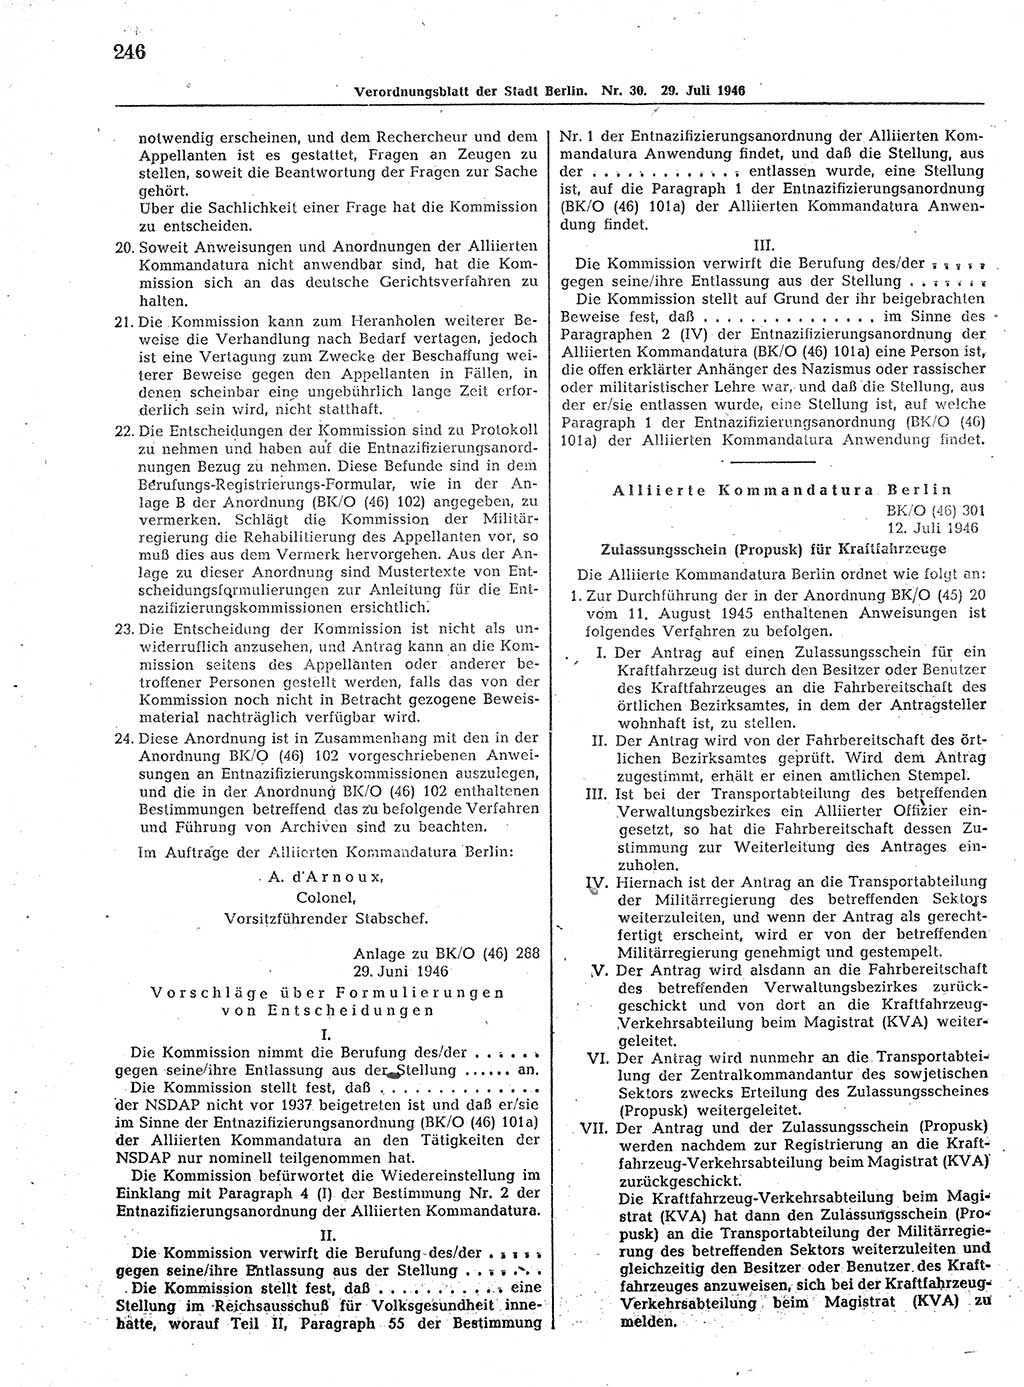 Verordnungsblatt (VOBl.) der Stadt Berlin, für Groß-Berlin 1946, Seite 246 (VOBl. Bln. 1946, S. 246)